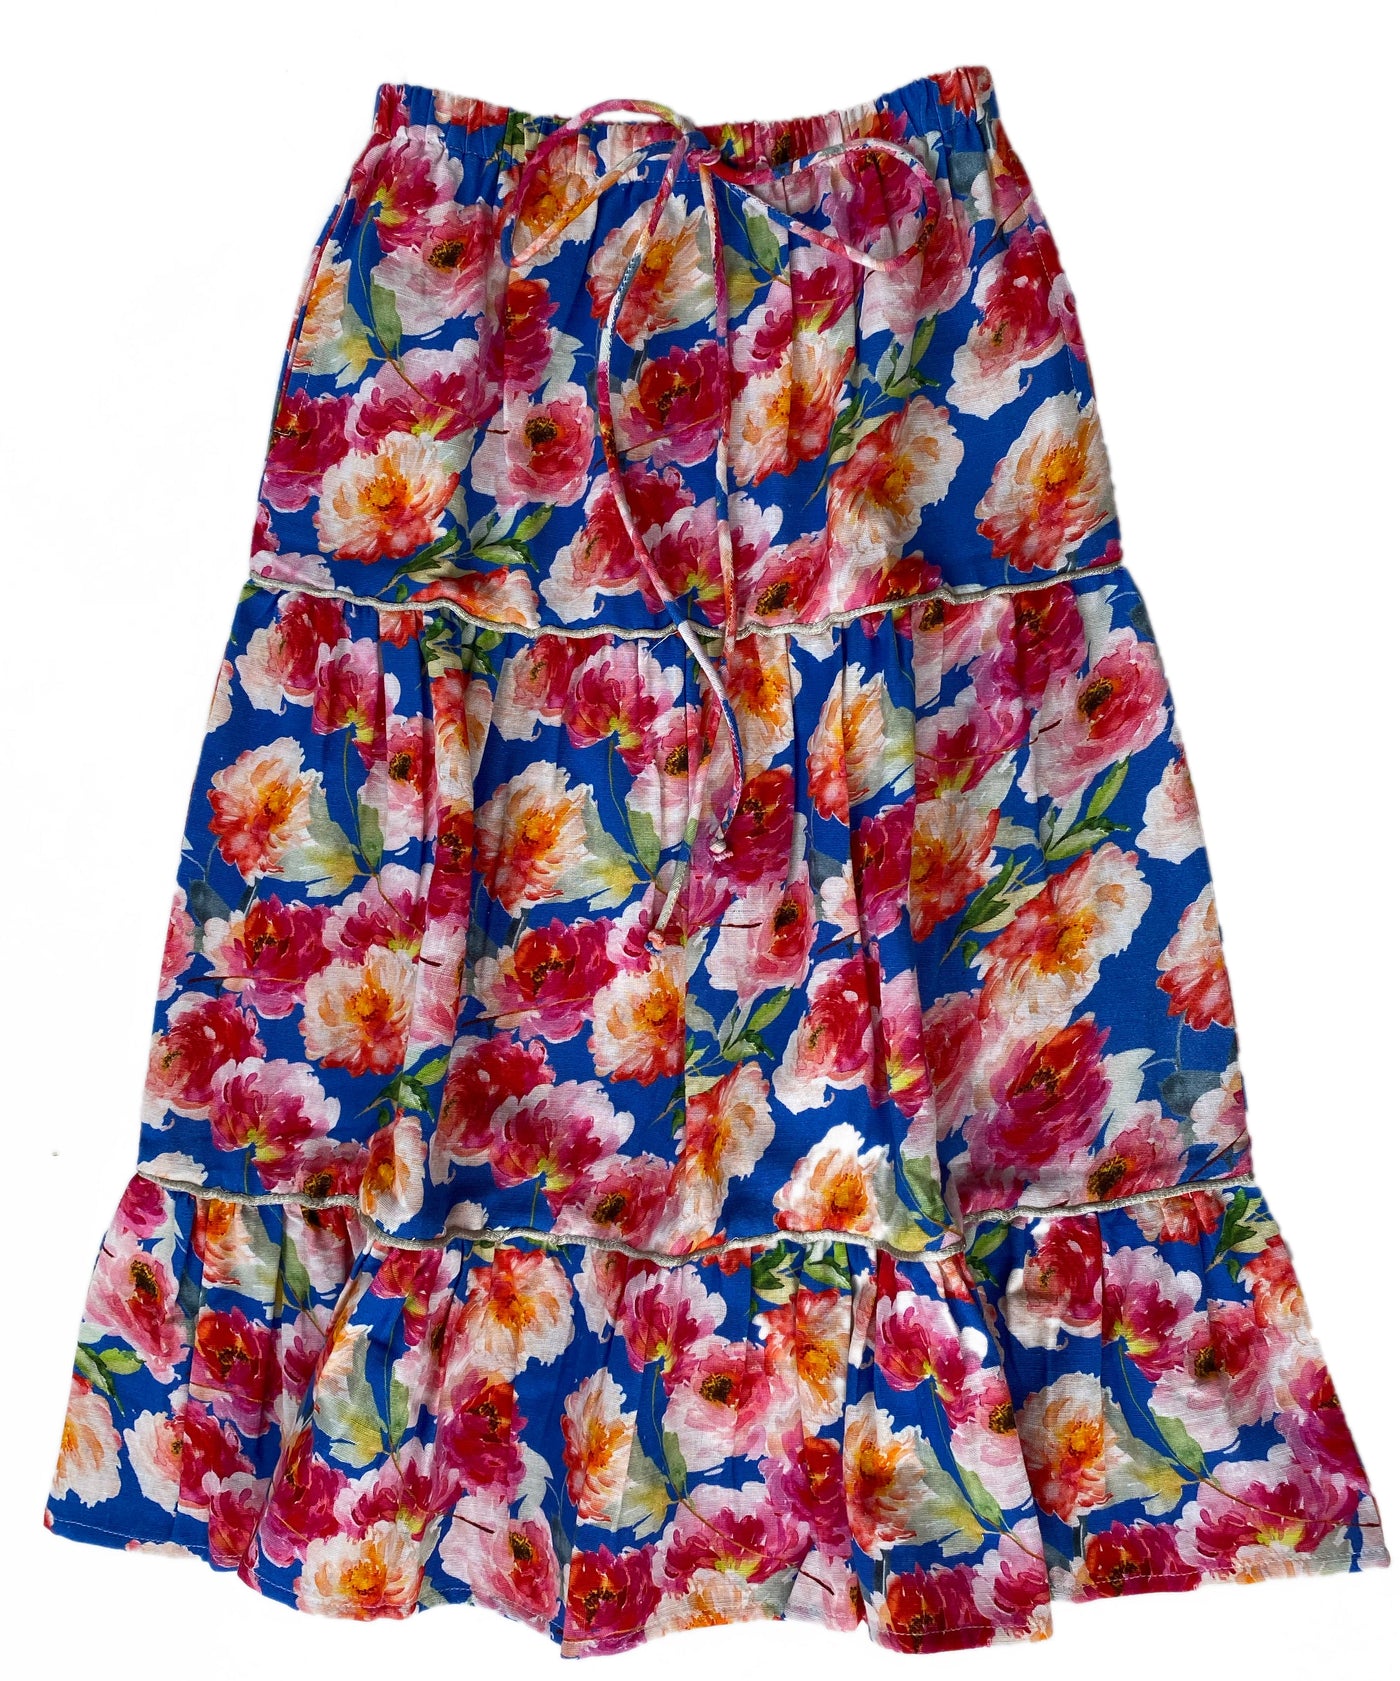 Chelsea Skirt - Grans Garden Skirt Bella & Lace 